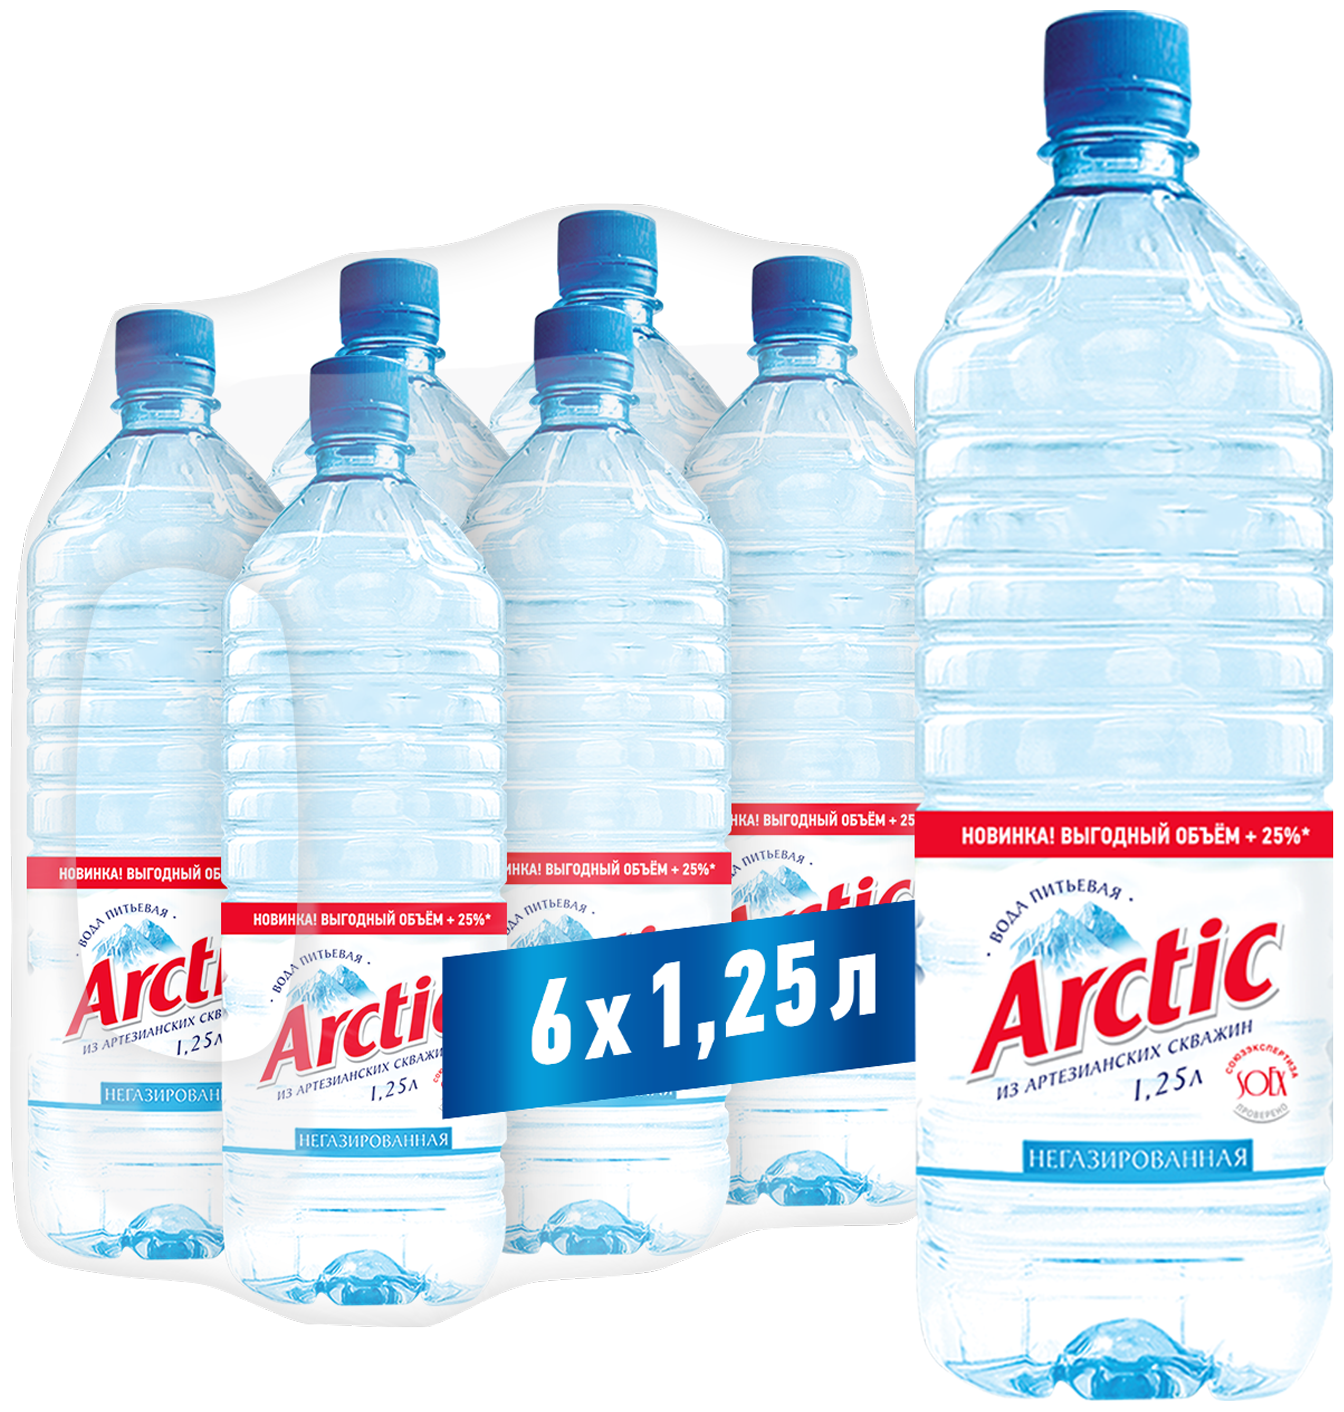 Arctic вода питьевая природная негазированная 125 л. х 6 шт. ПЭТ